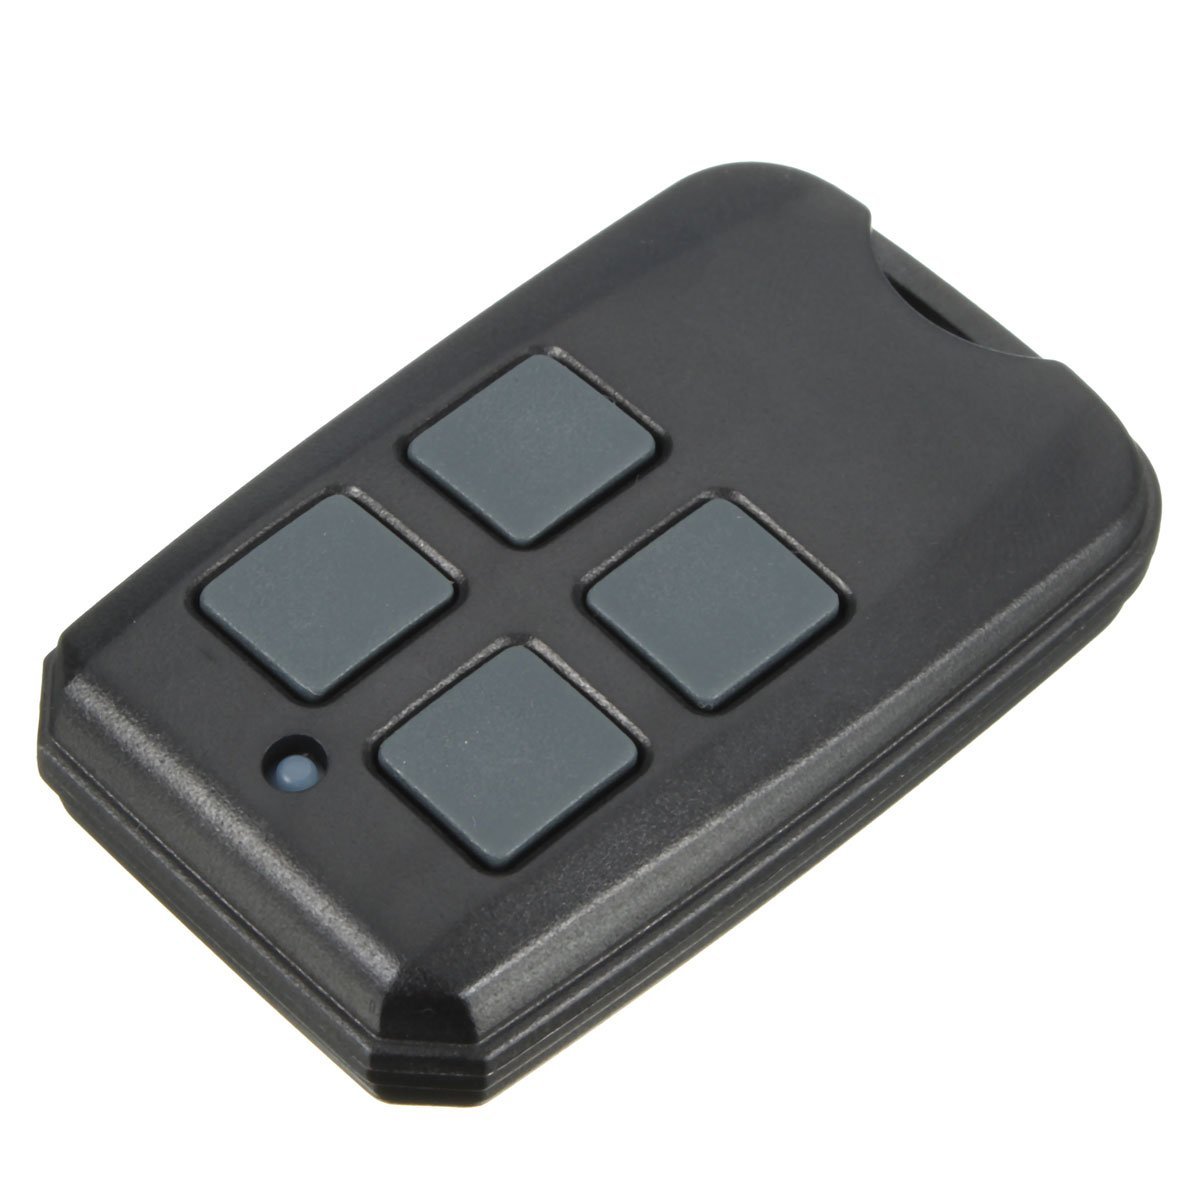 4 Button 315/390Mhz Garage Gate Remote Control For G3t-Bx Gic Git Ocdt 37218...